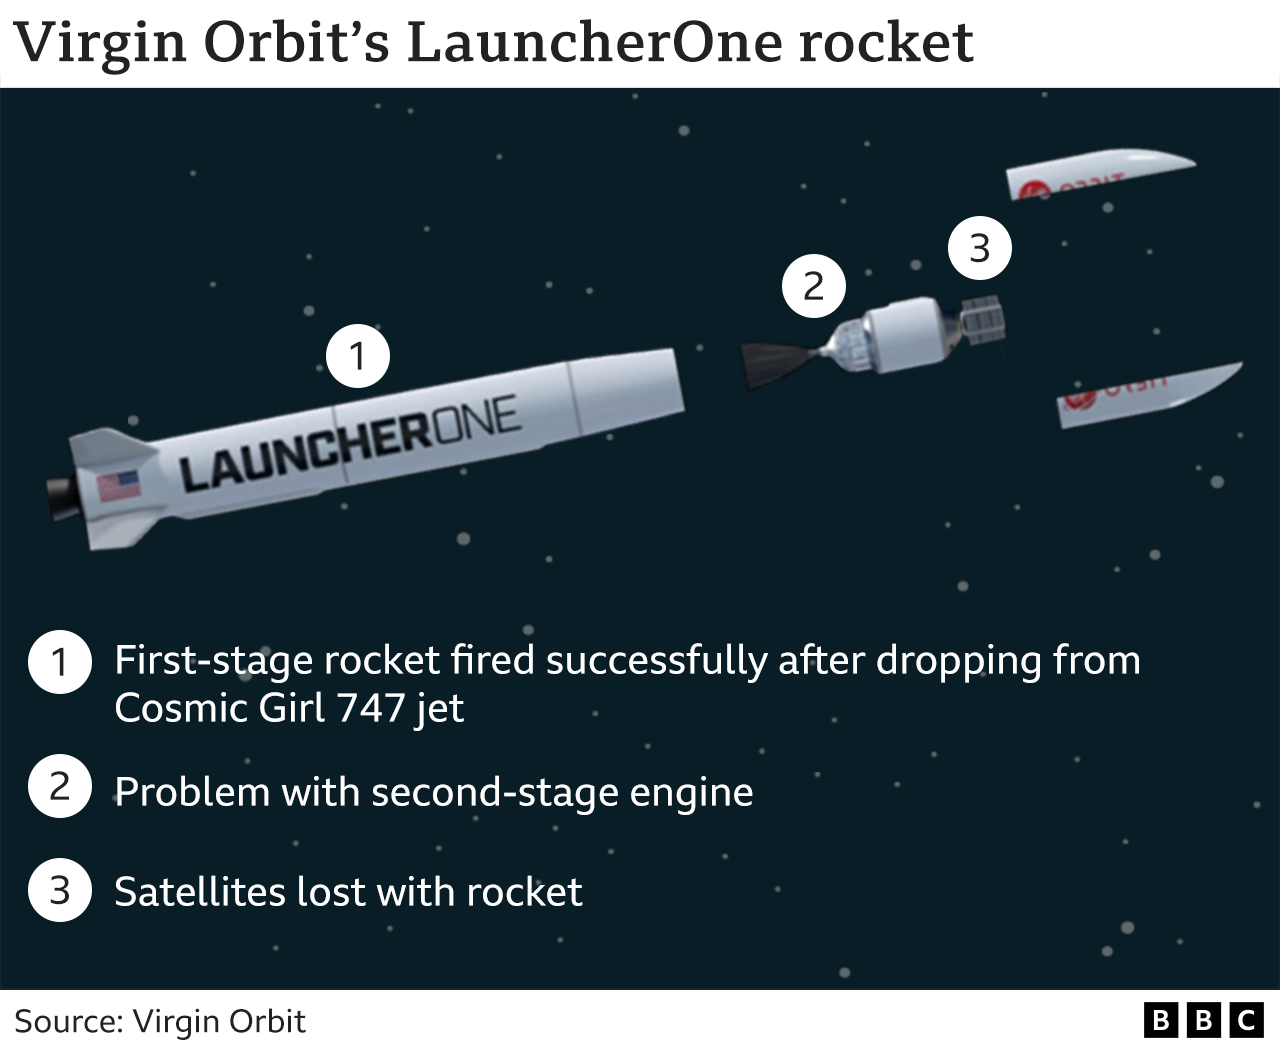 Gráfico que muestra las etapas del cohete. 1. Cohete de la primera etapa disparado con éxito tras caer del avión Cosmic Girl 747. 2. Problema con el motor de la segunda etapa. 3. Satélites perdidos con el cohete